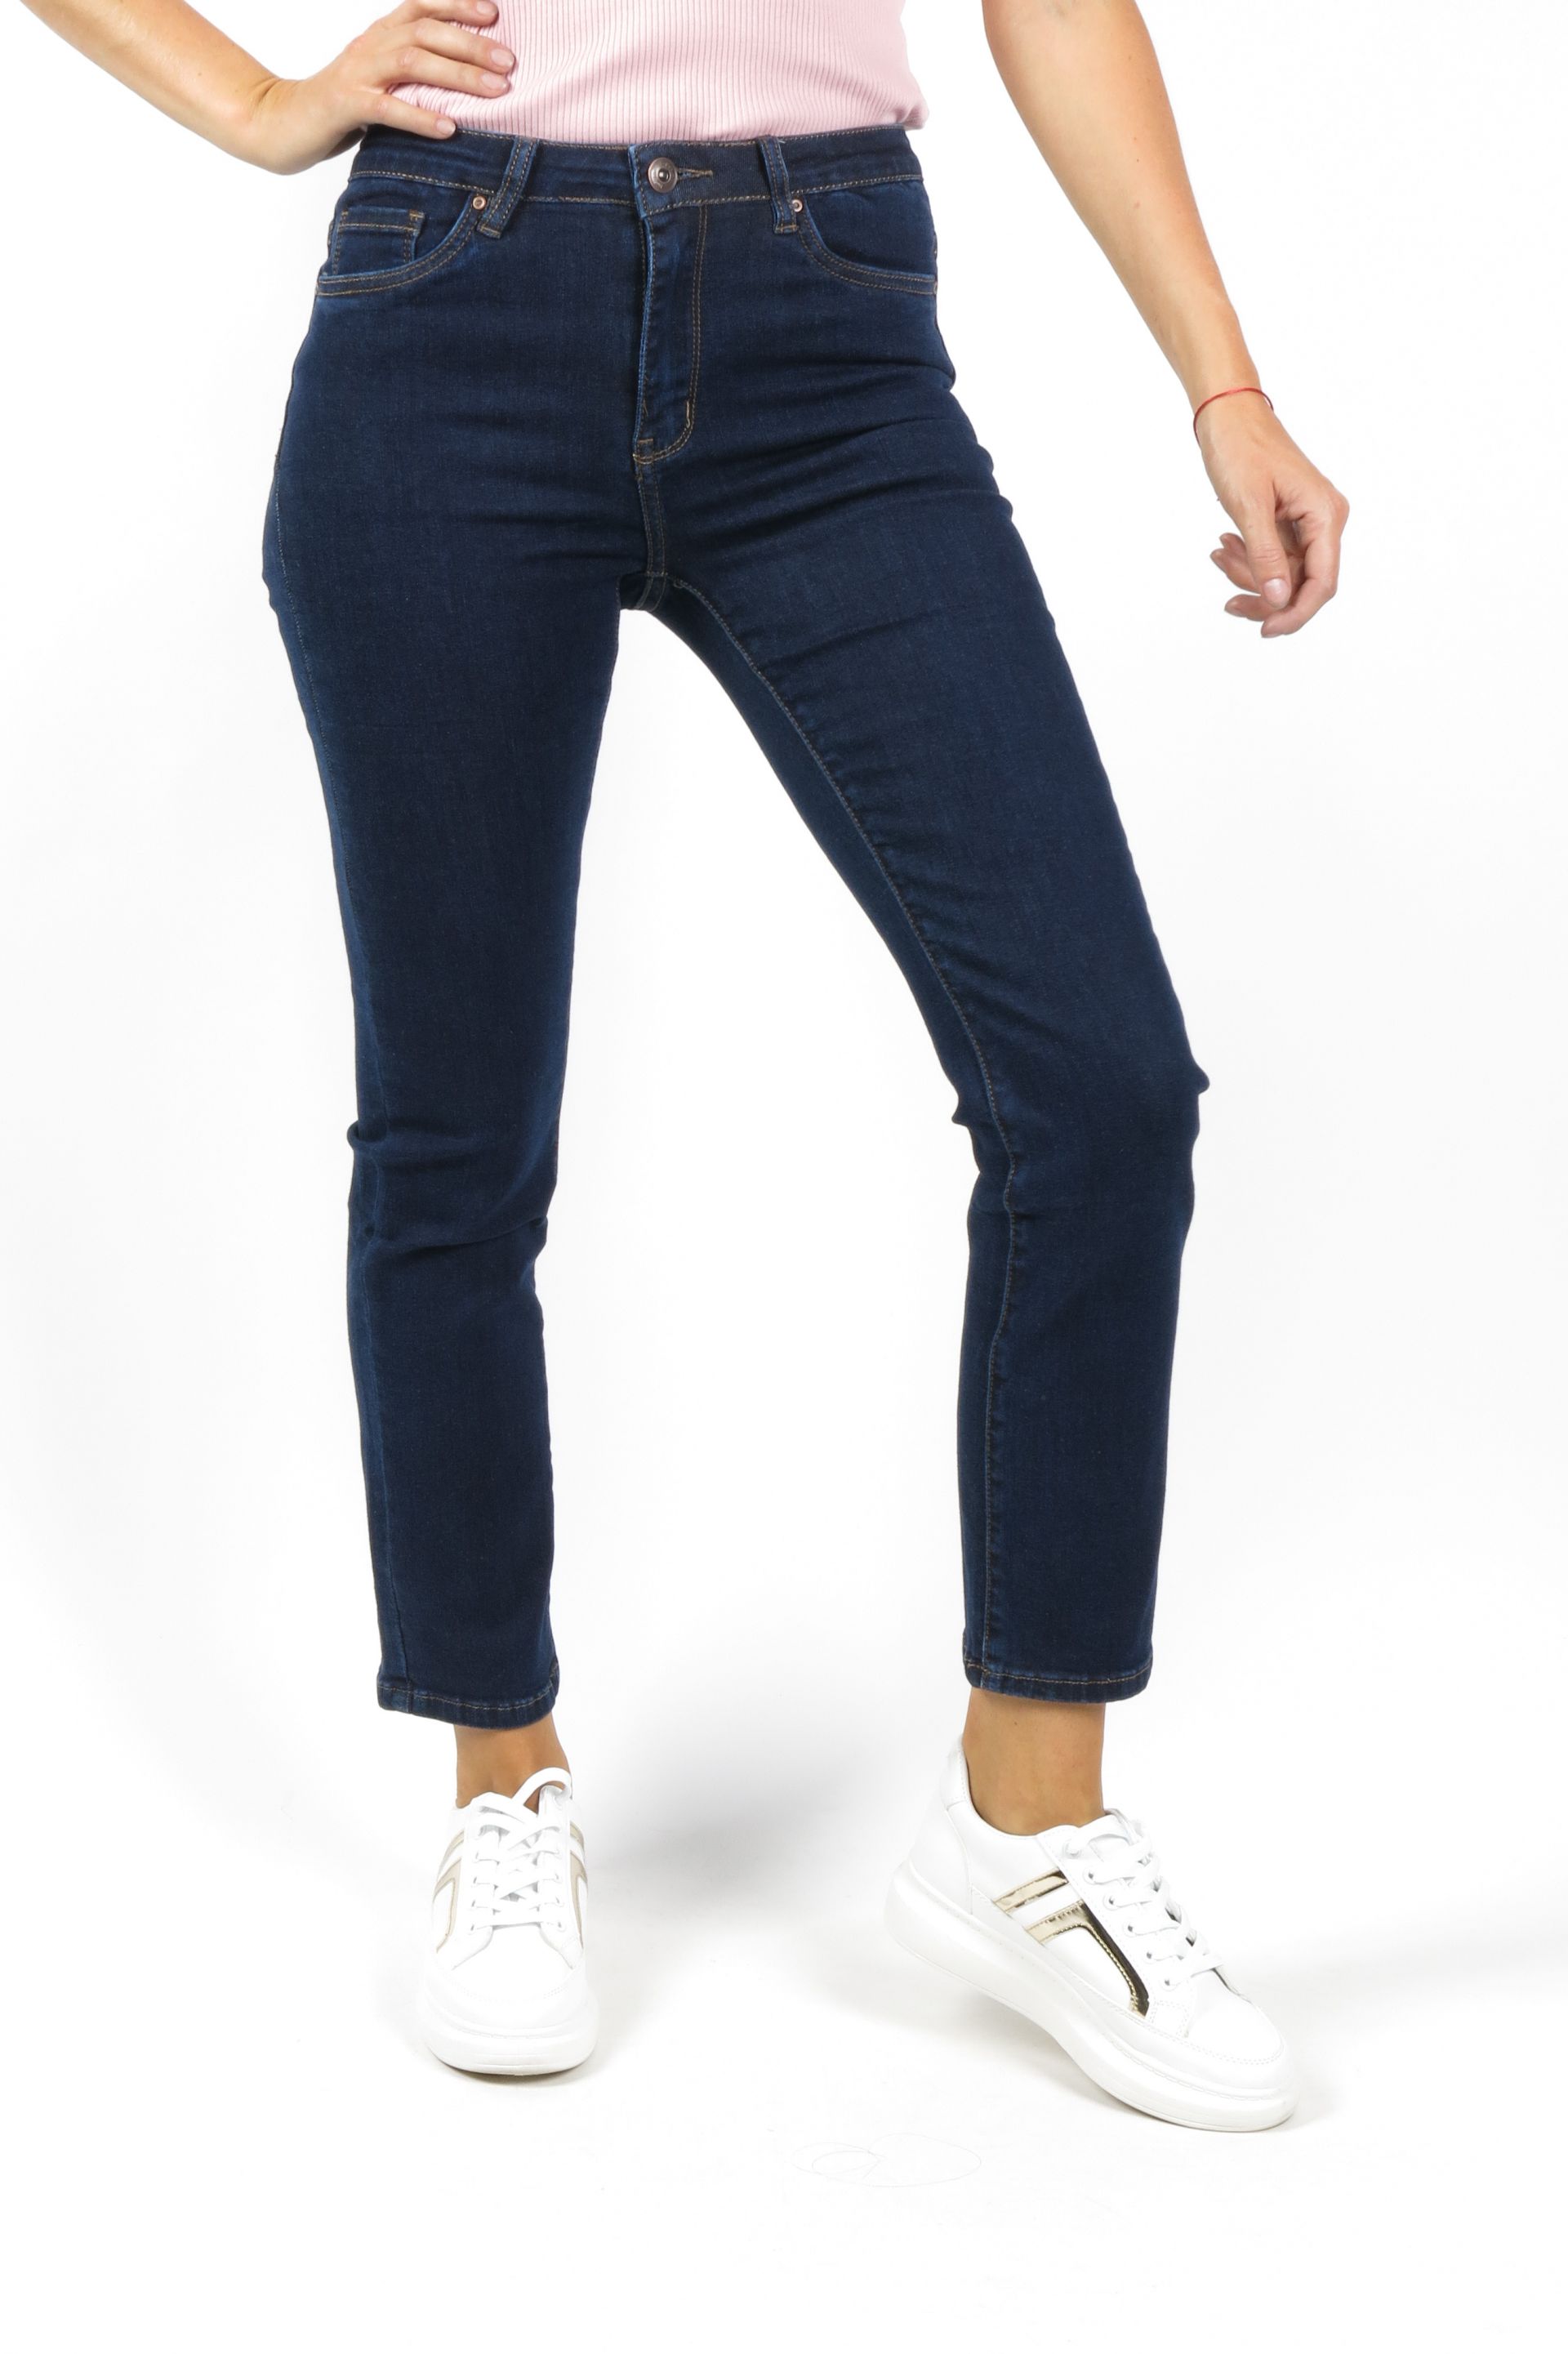 Jeans VS MISS VS7253